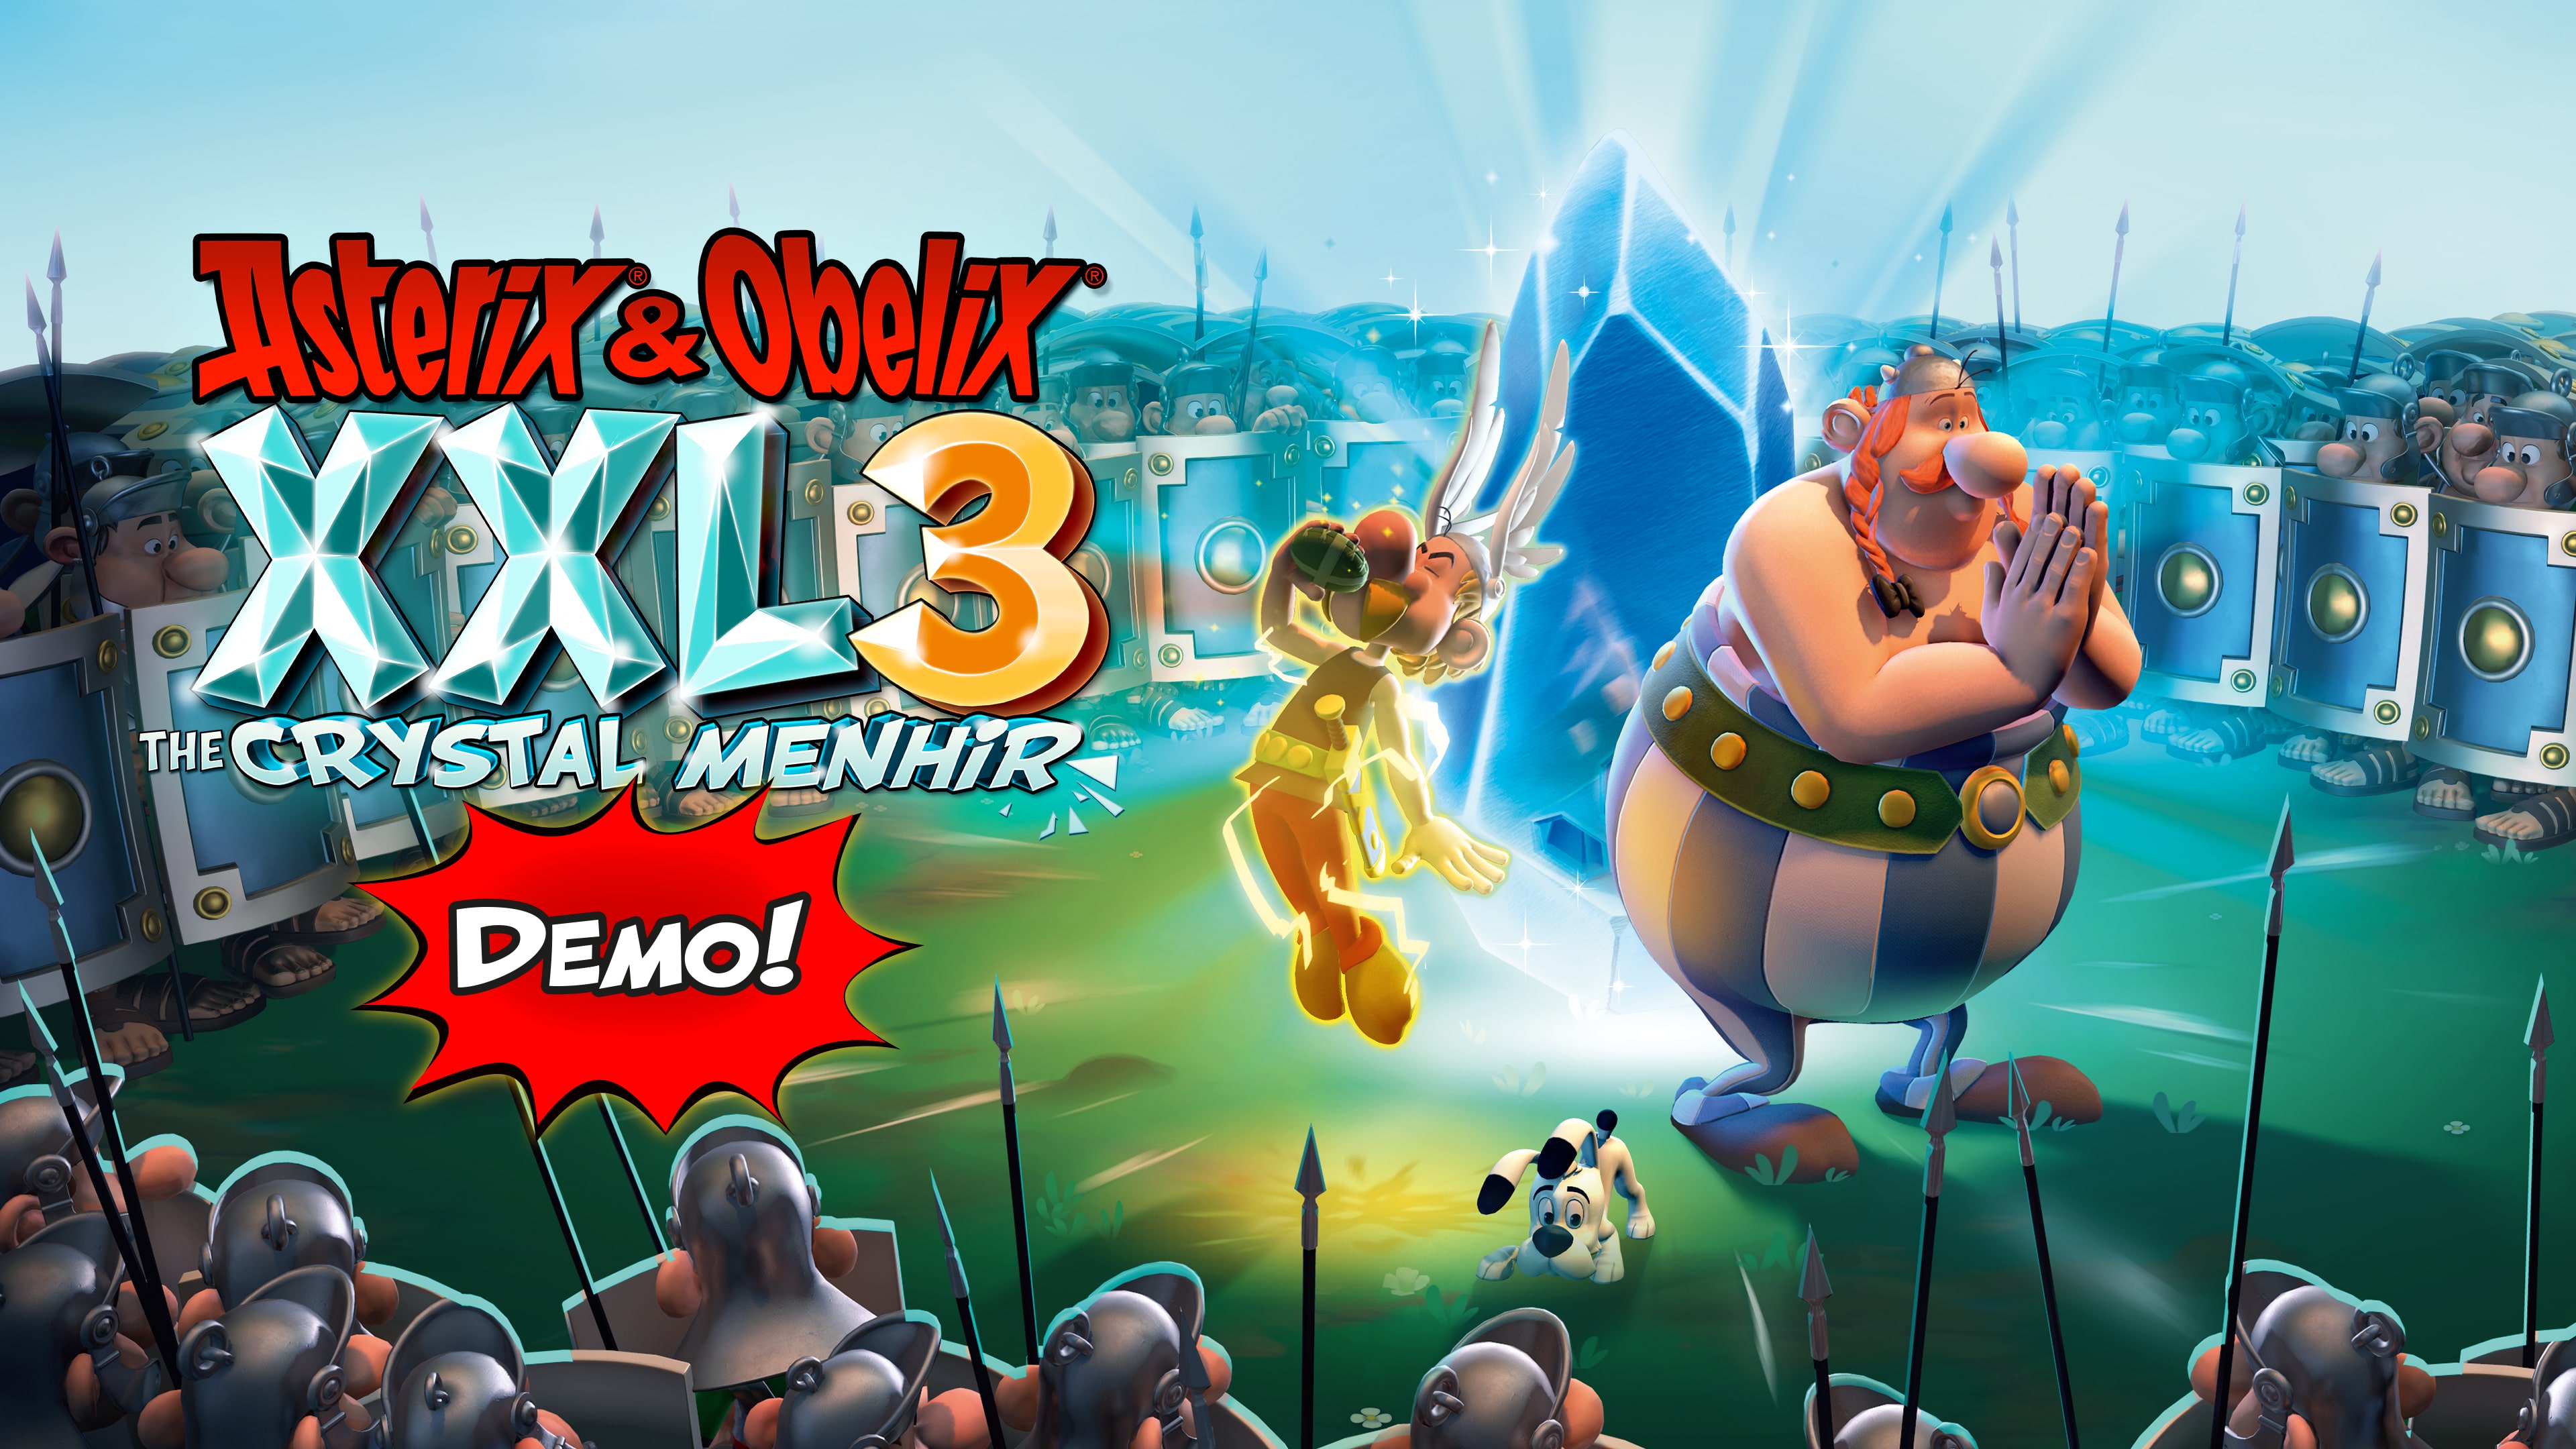 Asterix & Obelix XXL3: The Crystal Menhir - Demo